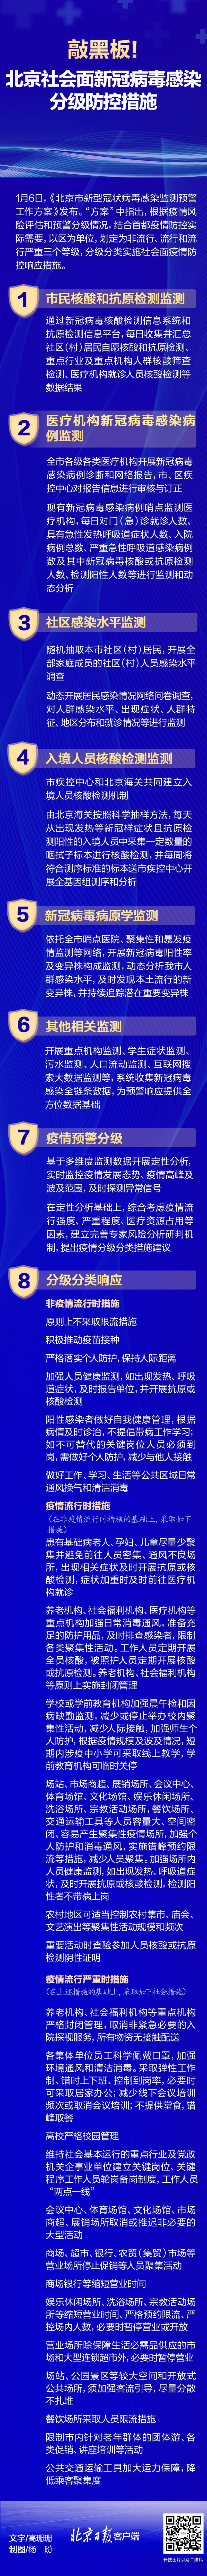 北京社会面新冠病毒感染预警和分级防控措施公布